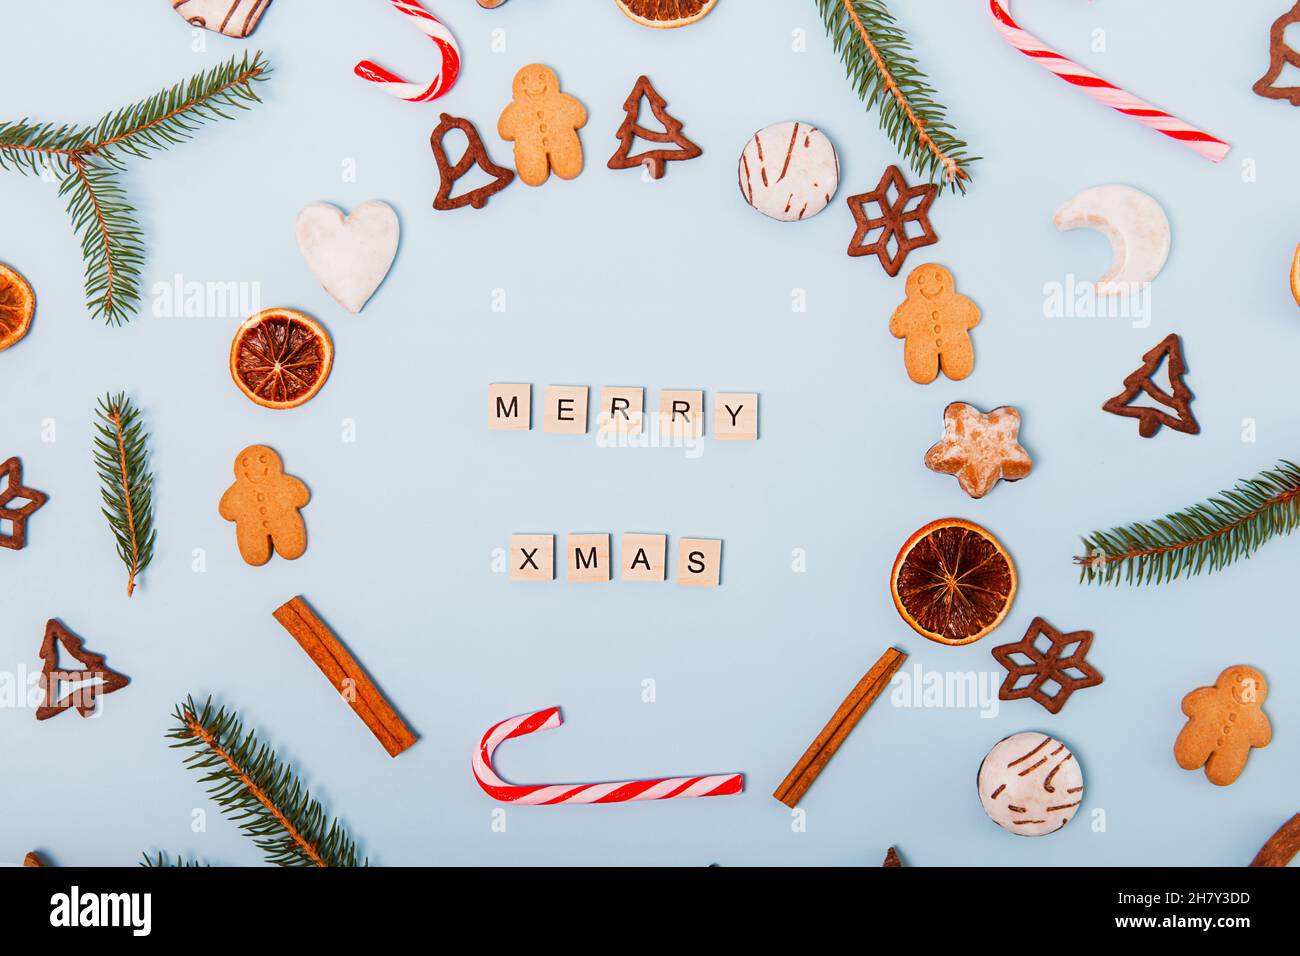 Draufsicht Weihnachtskranz aus verschiedenen Sorten von Weihnachtsgebäck, Süßigkeiten, Bonbons, getrockneten Orangen, Lebkuchenbonbons auf dem blauen Backgr Stockfoto